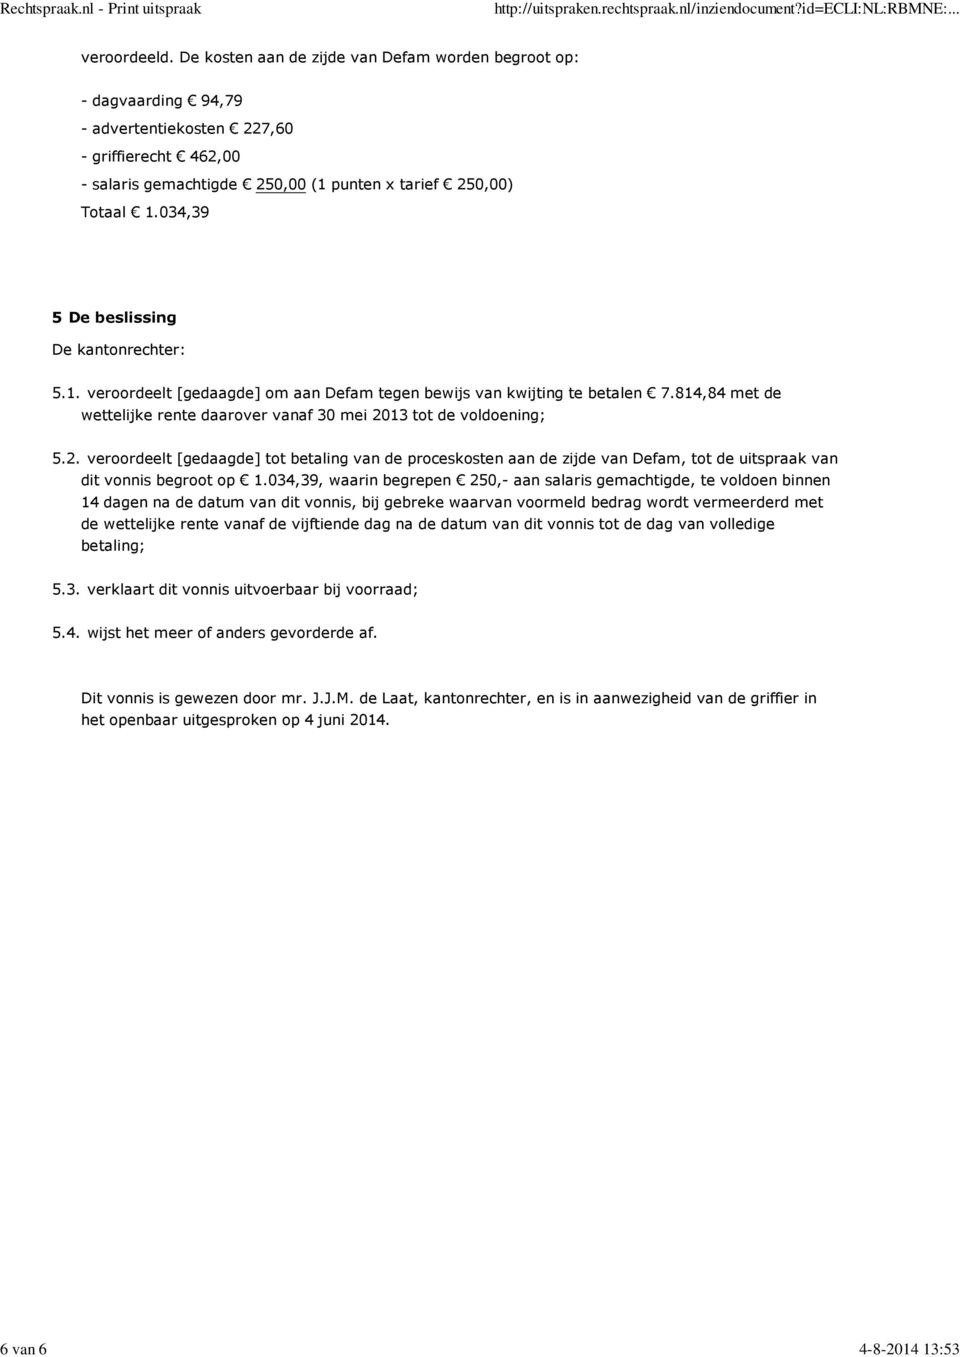 034,39 5 De beslissing De kantonrechter: 5.1. veroordeelt [gedaagde] om aan Defam tegen bewijs van kwijting te betalen 7.814,84 met de wettelijke rente daarover vanaf 30 mei 2013 tot de voldoening; 5.